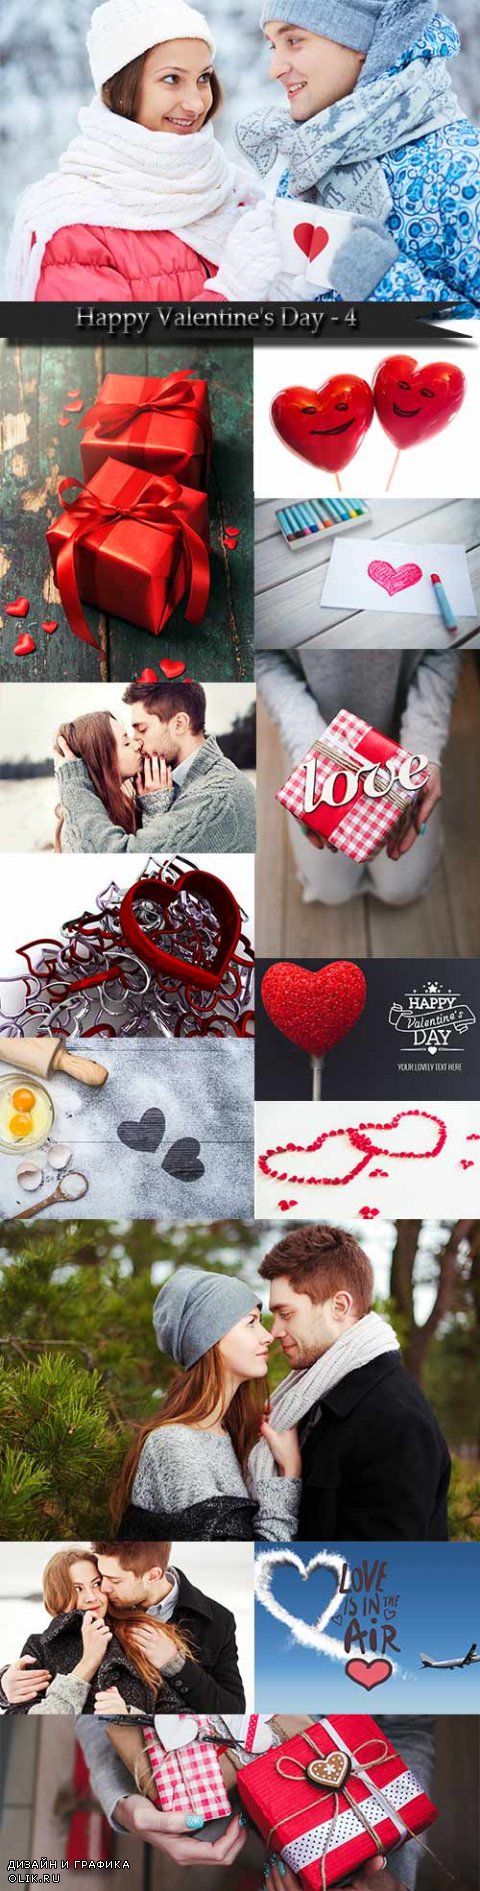 Счастливого дня святого валентина - картинки влюбленной пары